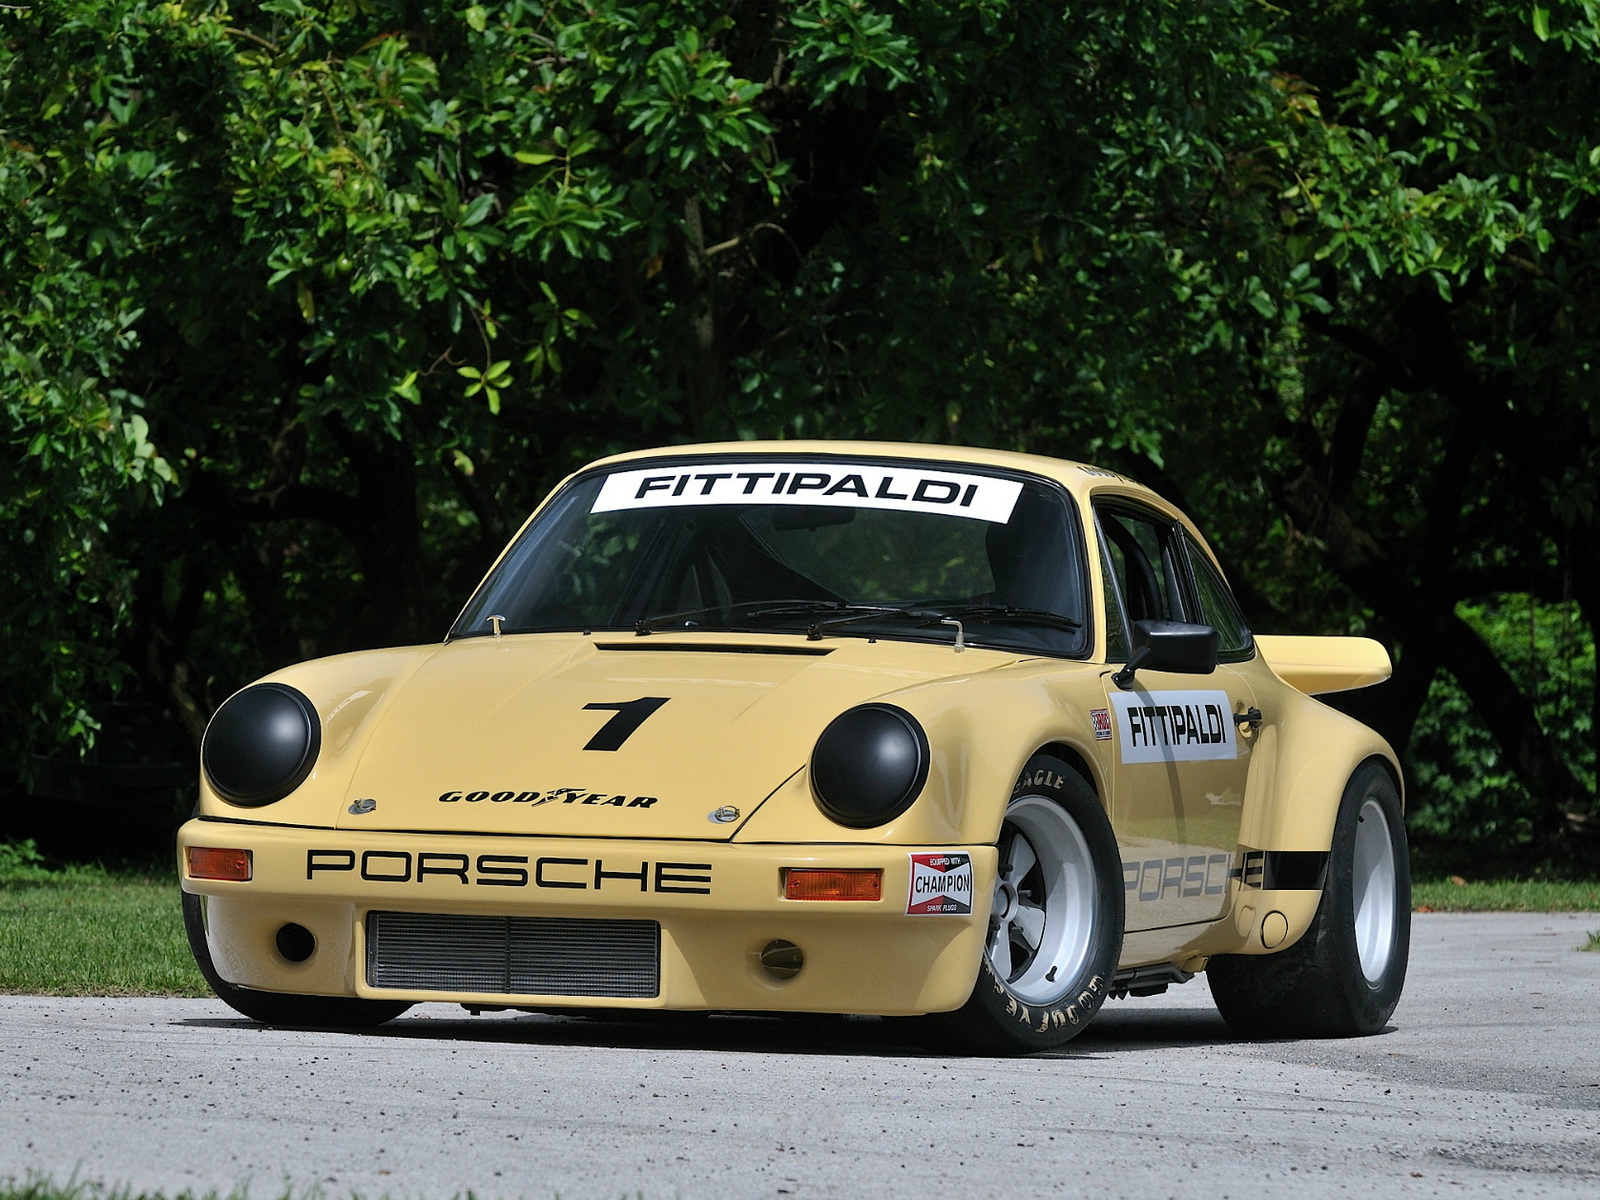 1973, Porsche, 911, Carrera, Rsr, Iroc, Race, Racing, Classic, Supercar, Supercars Wallpaper